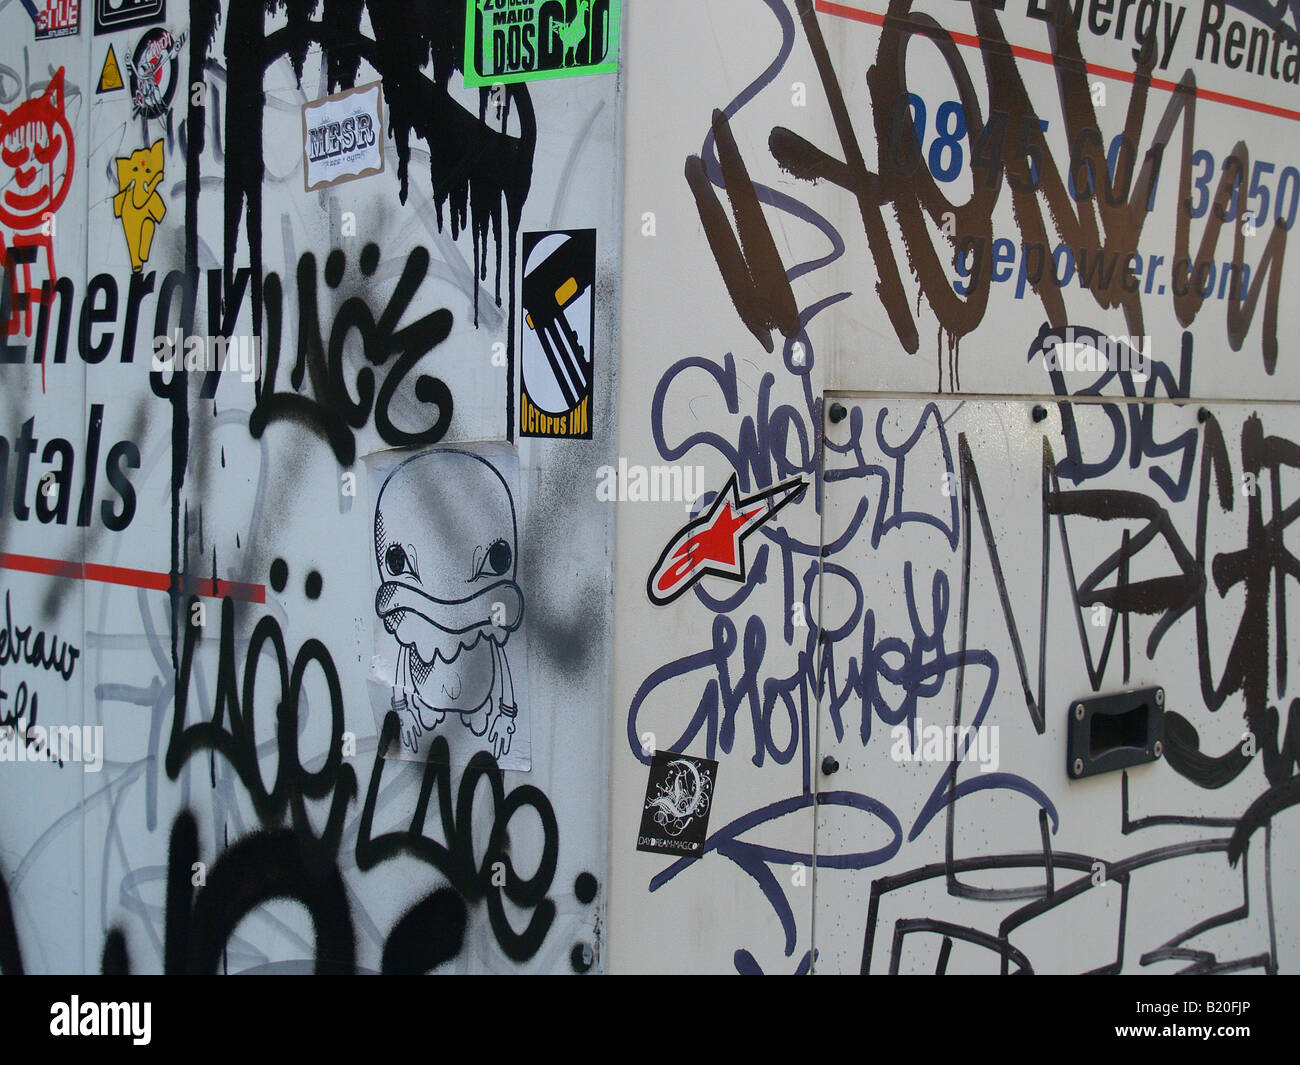 Graffiti Vandal - KibrisPDR